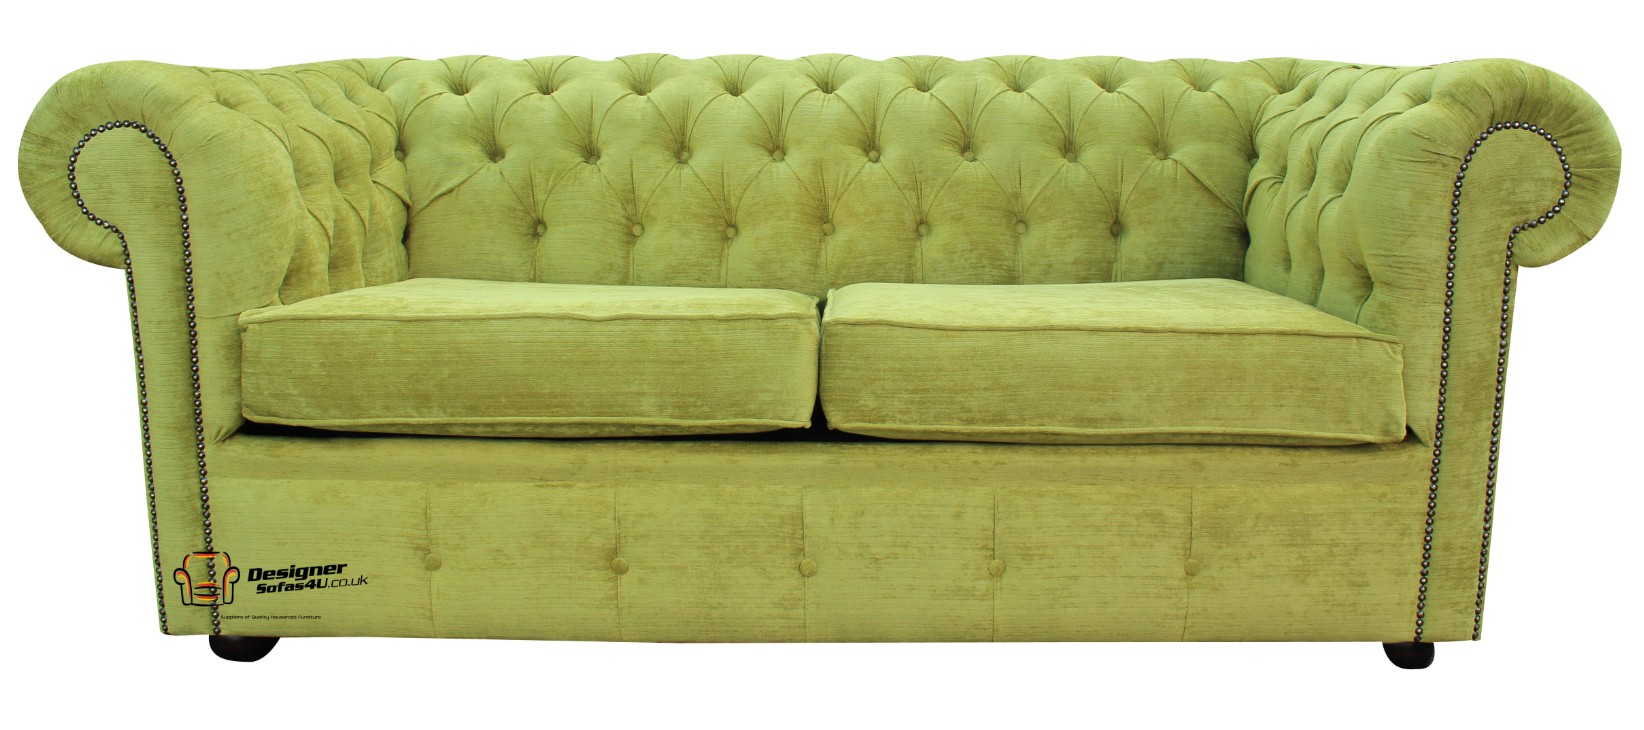 Chesterfield 2 Seater Settee Azzuro Olive Green Velvet Fabric Sofa Offer